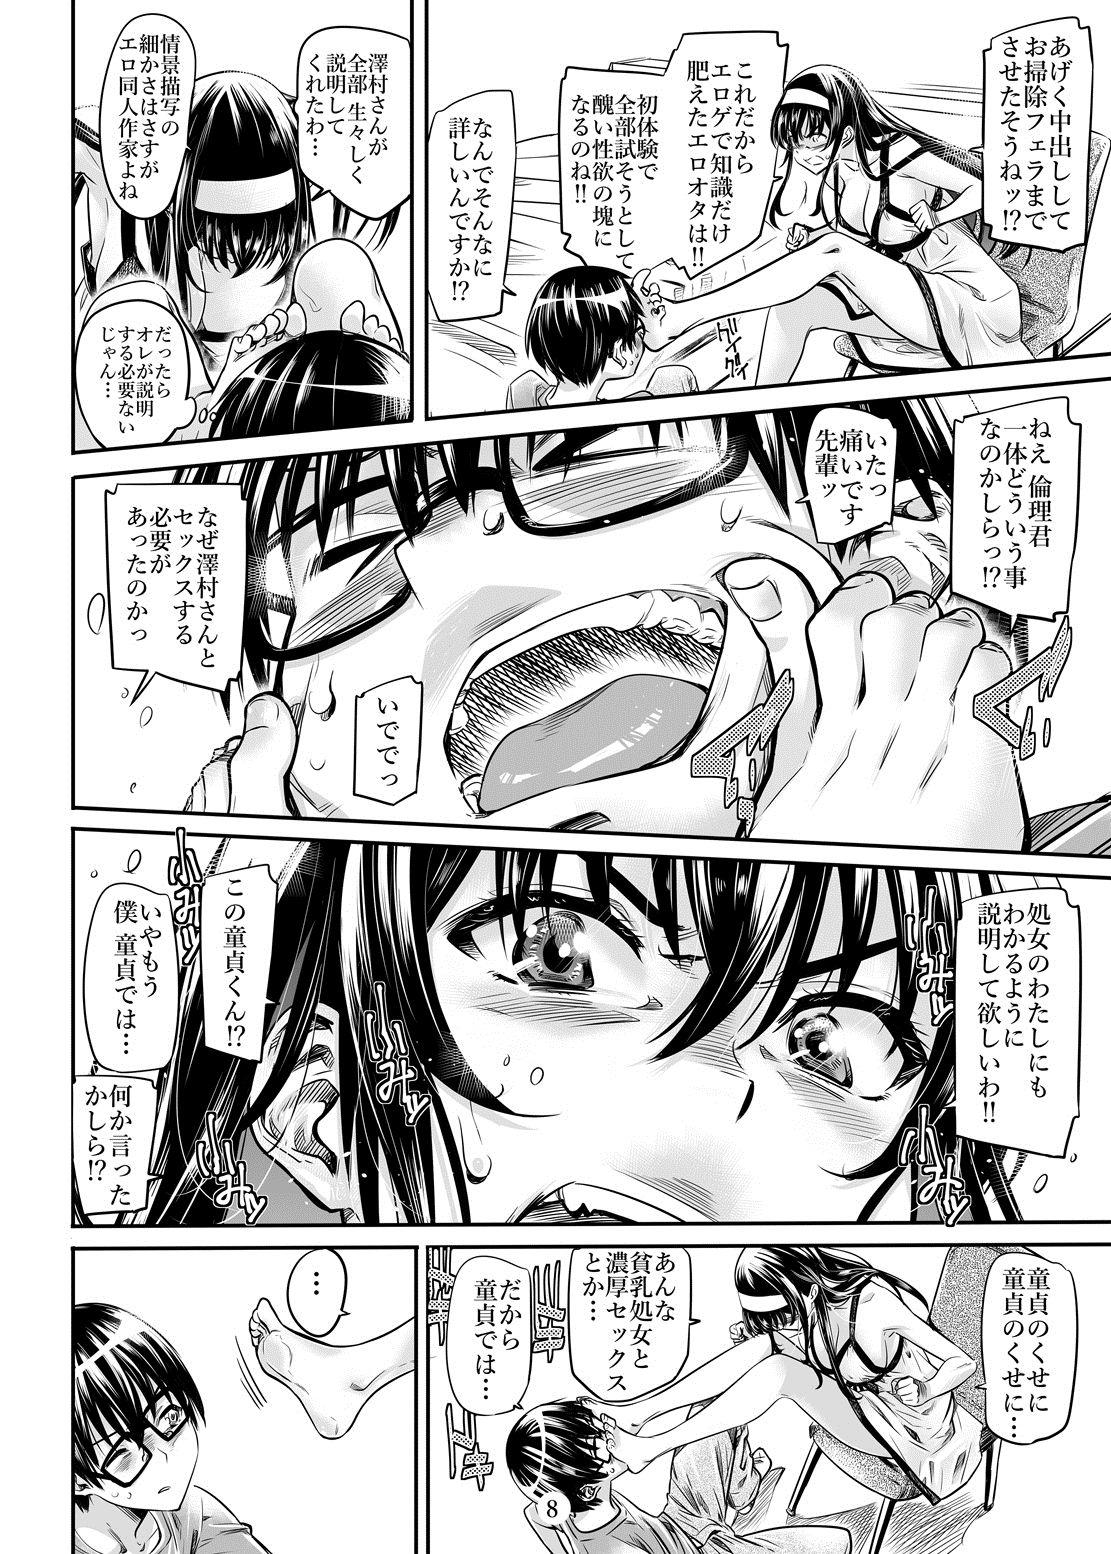 Madura Saenai Heroine Series Vol. 2 - Saenai Namaashi Senpai no Ijirikata - Saenai heroine no sodatekata Pmv - Page 7